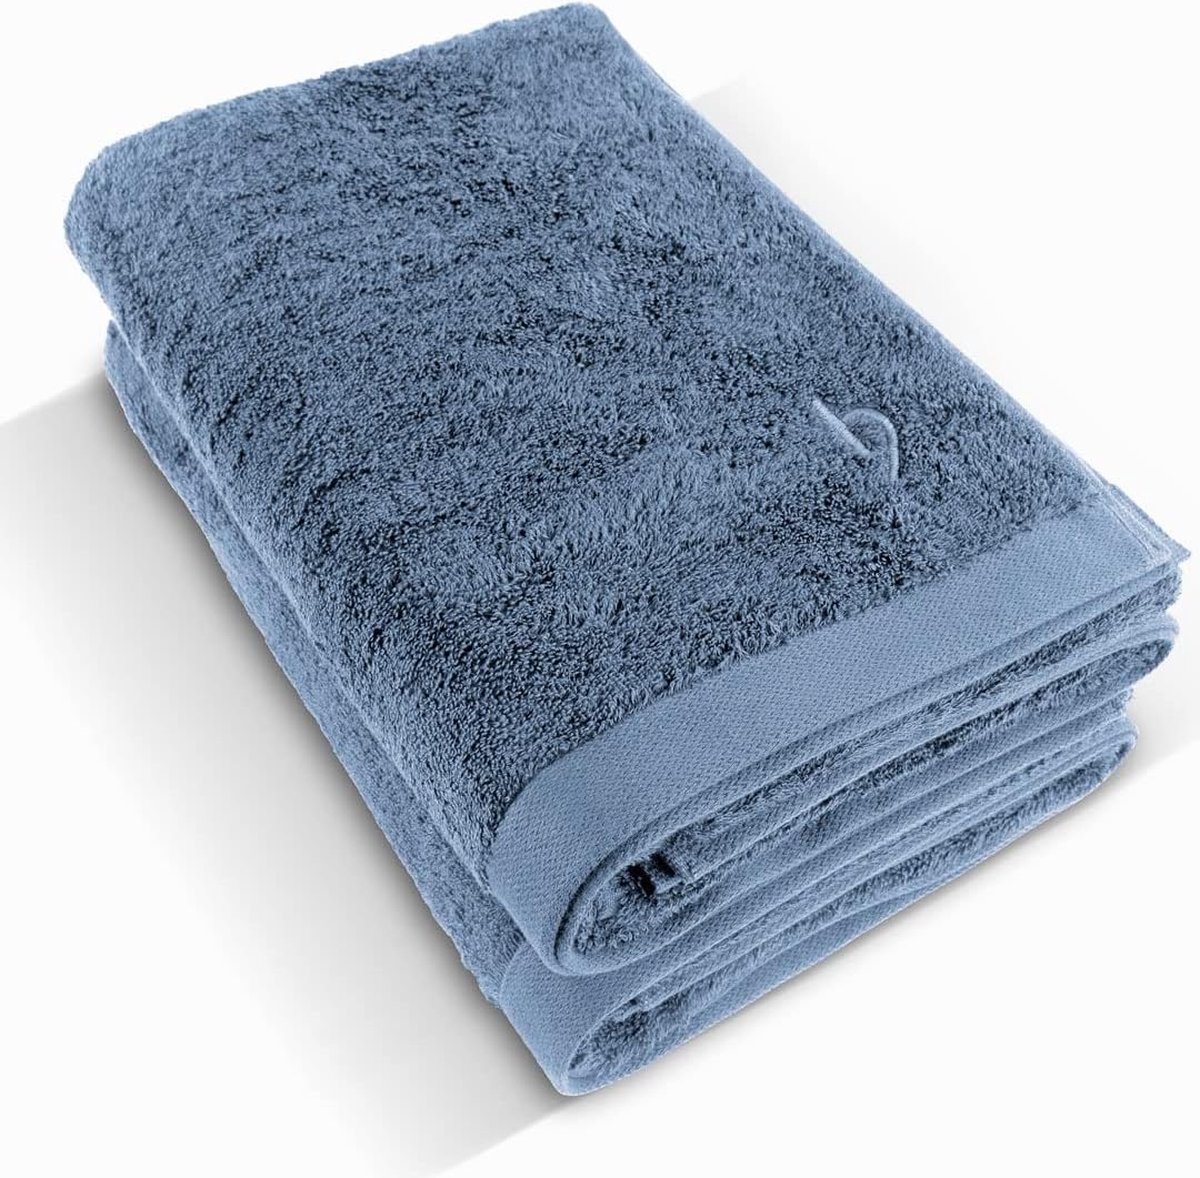 Premium douchehanddoek, set van 2 stuks, 70 x 140 cm, grote, zachte en absorberende douchehanddoeken van de beste kwaliteit, 100% natuurlijk katoen (blauw)